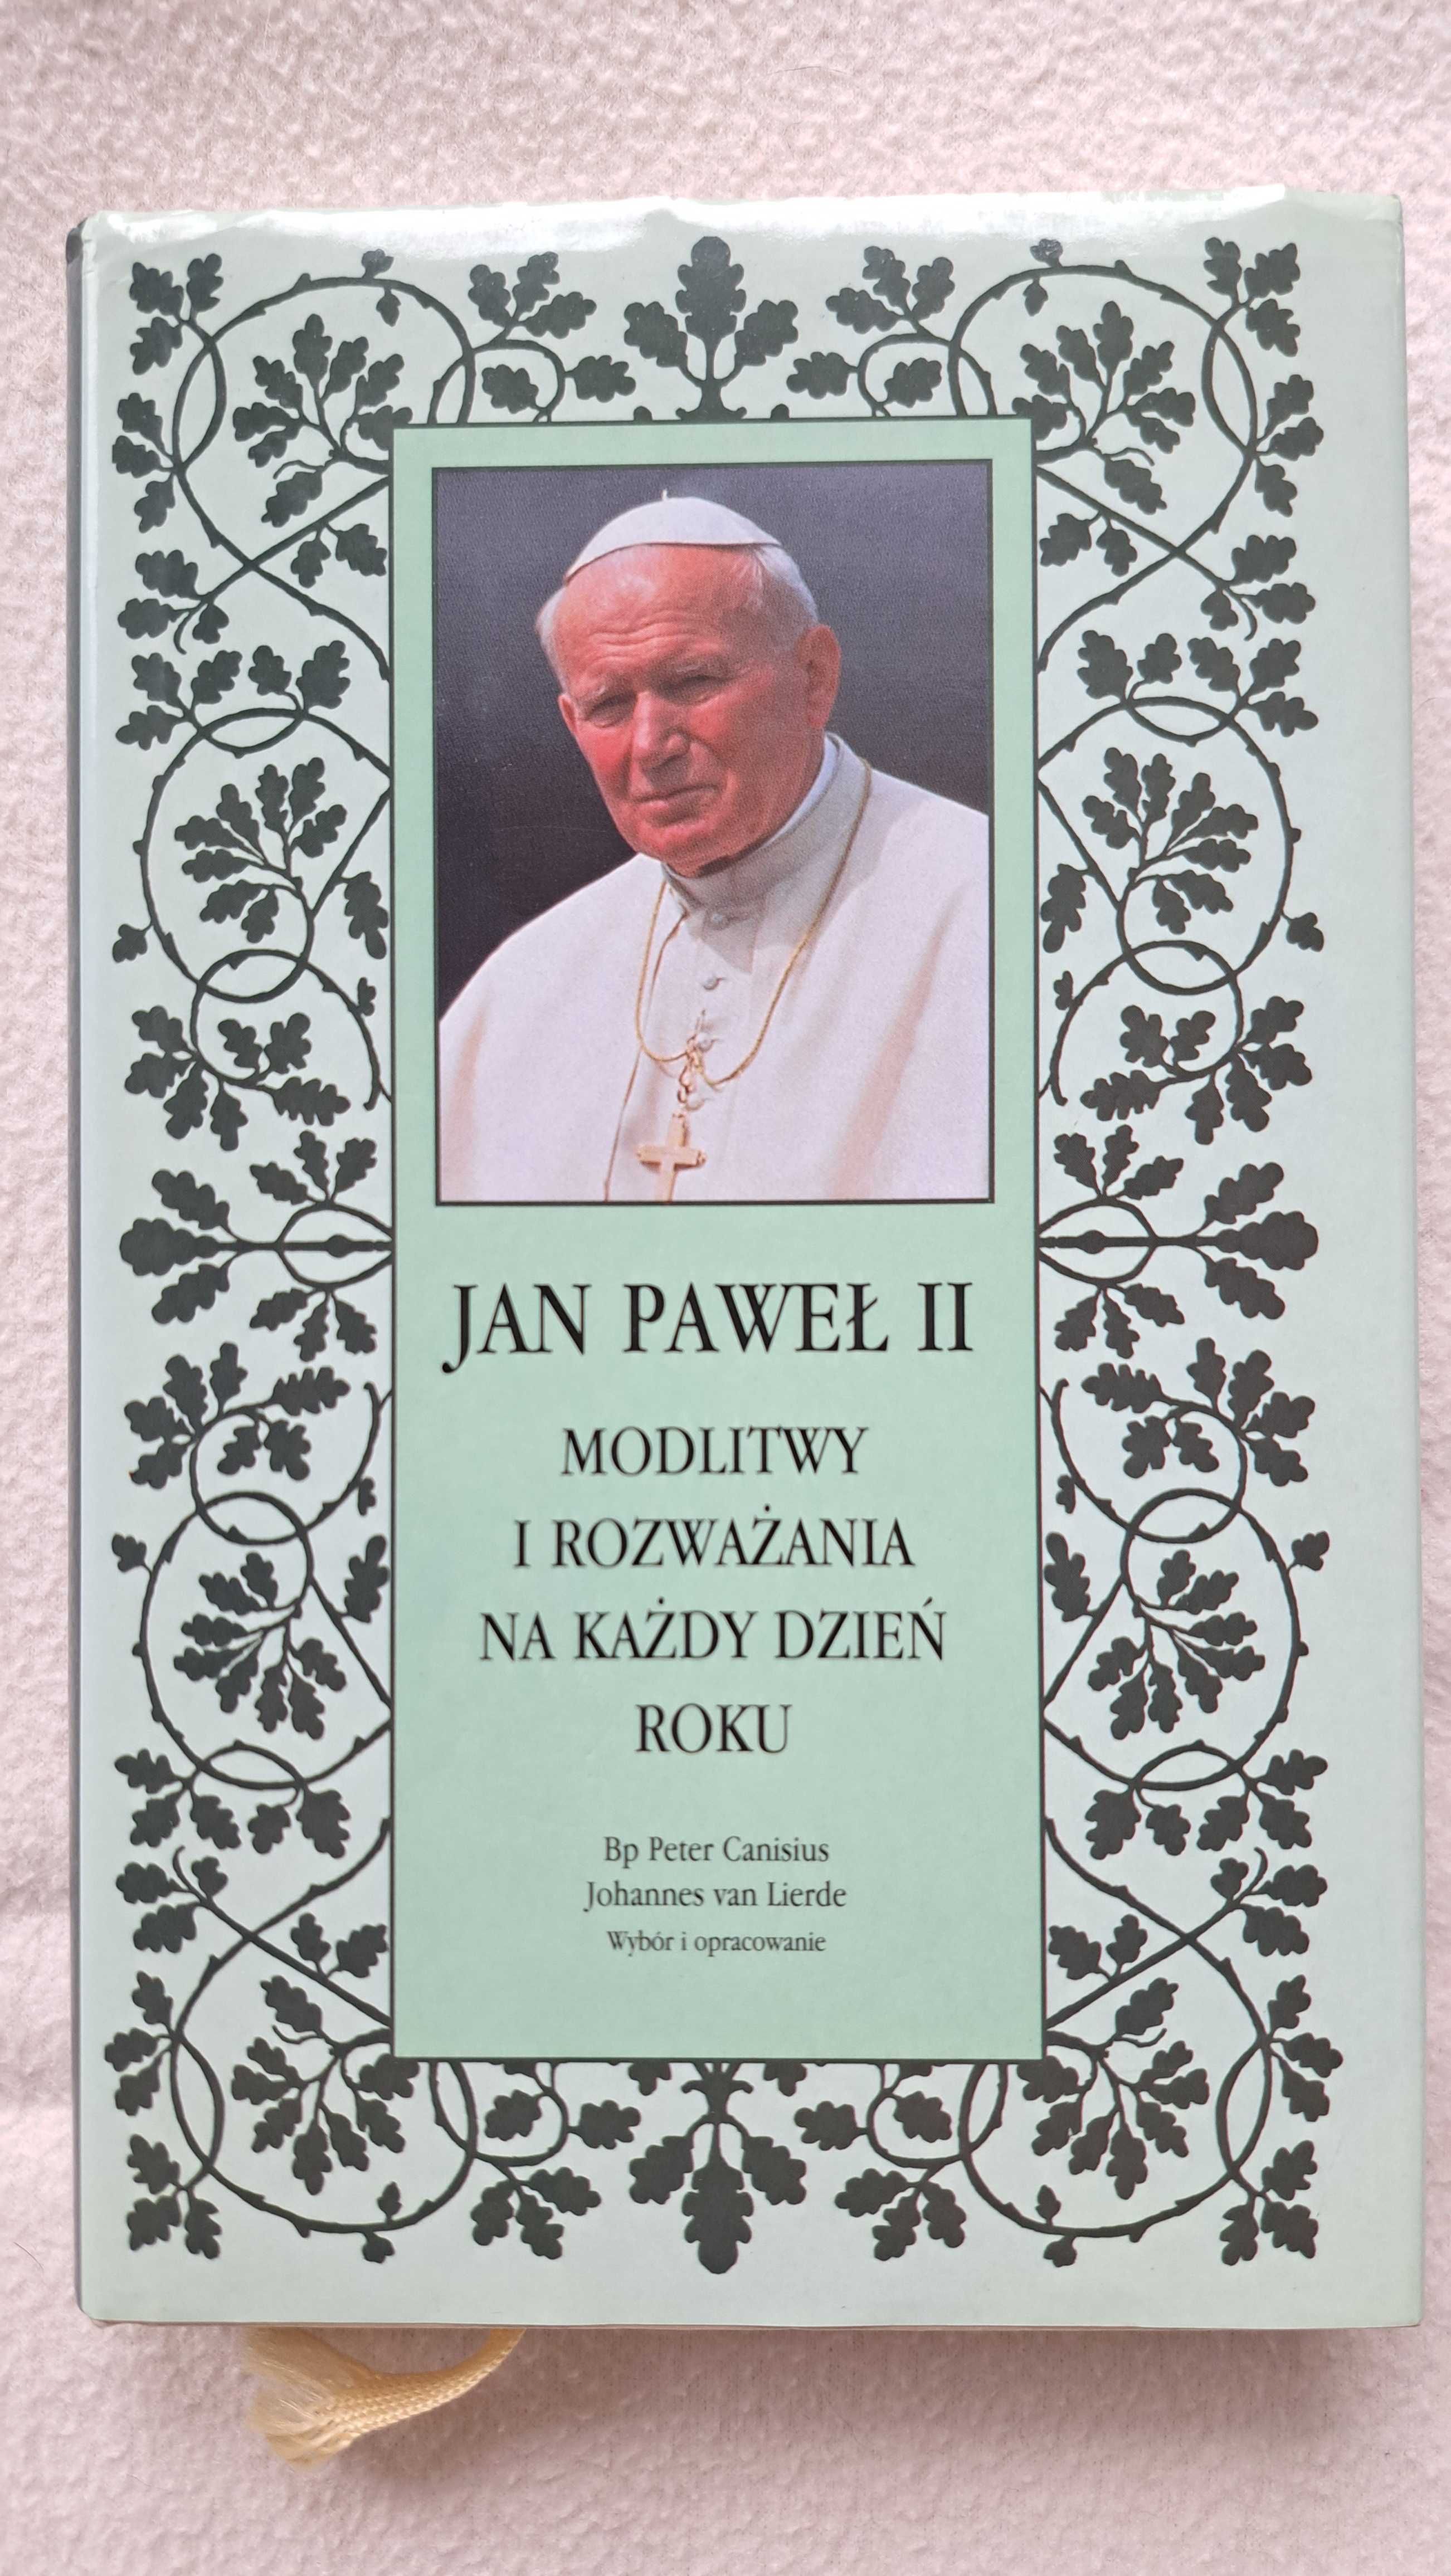 Jan Paweł II : Modlitwy i rozważania na każdy dzień roku